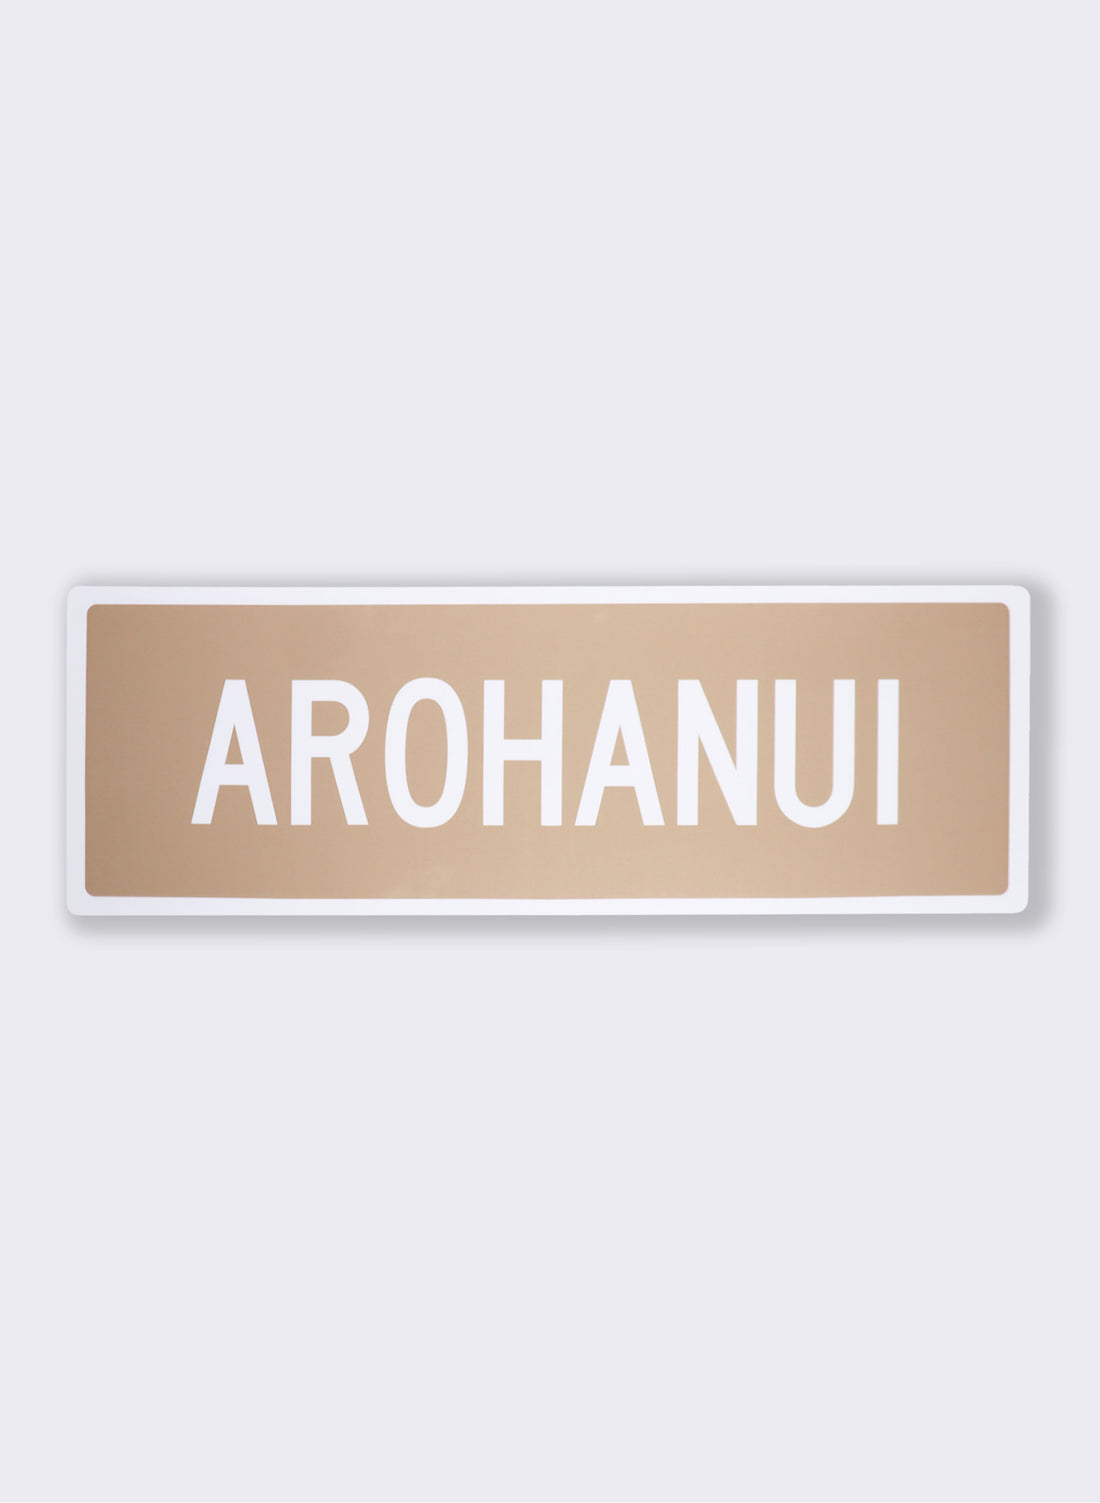 Arohanui - Road Sign Art